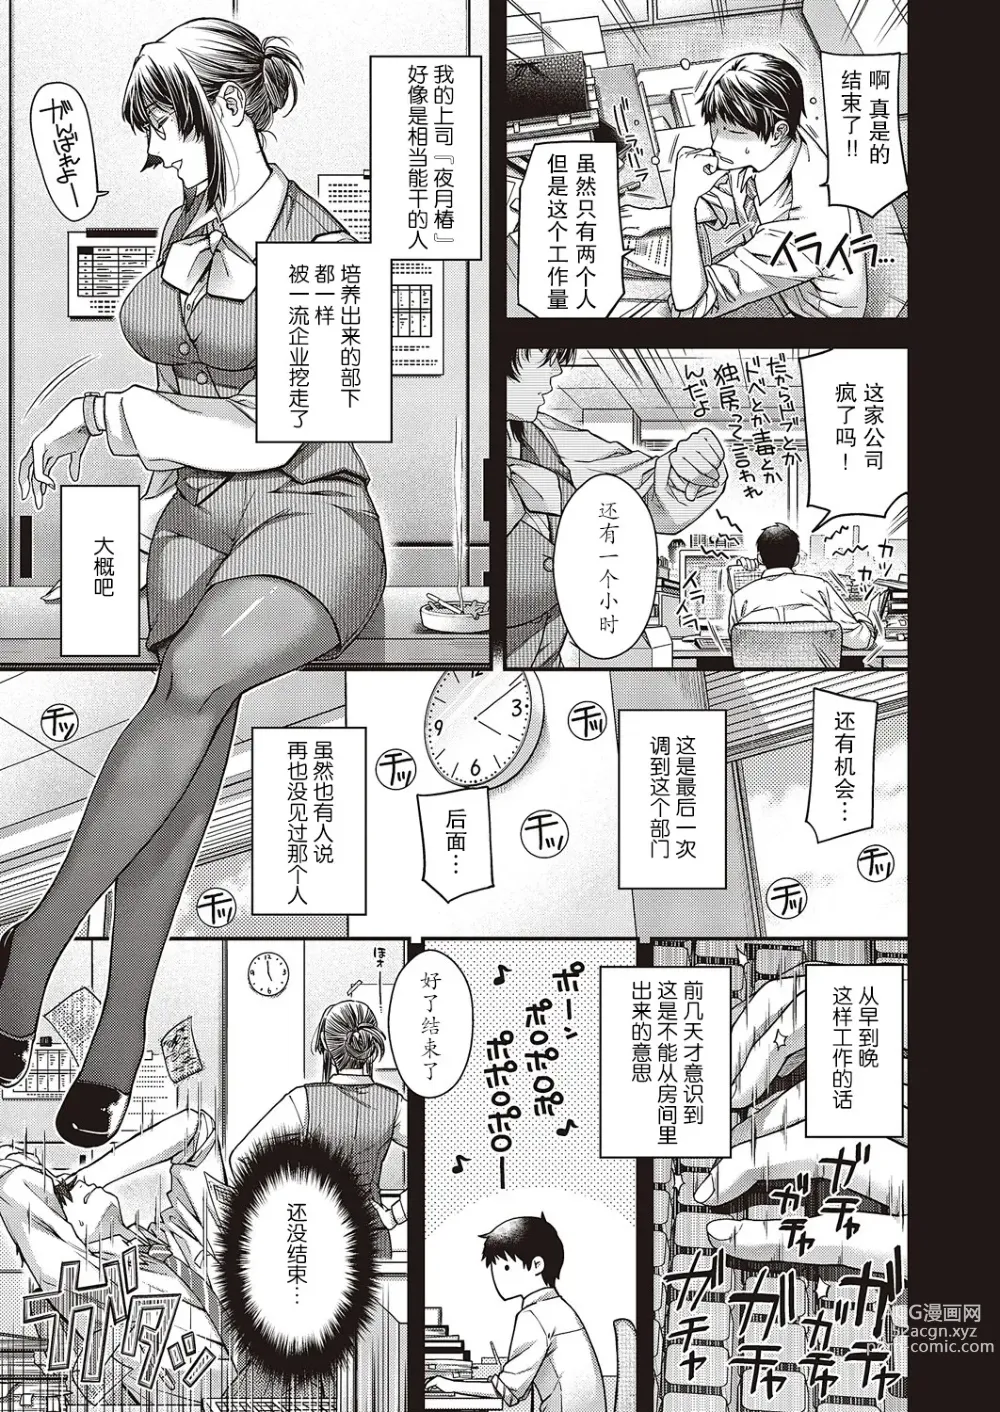 Page 3 of manga Enka no Kemono